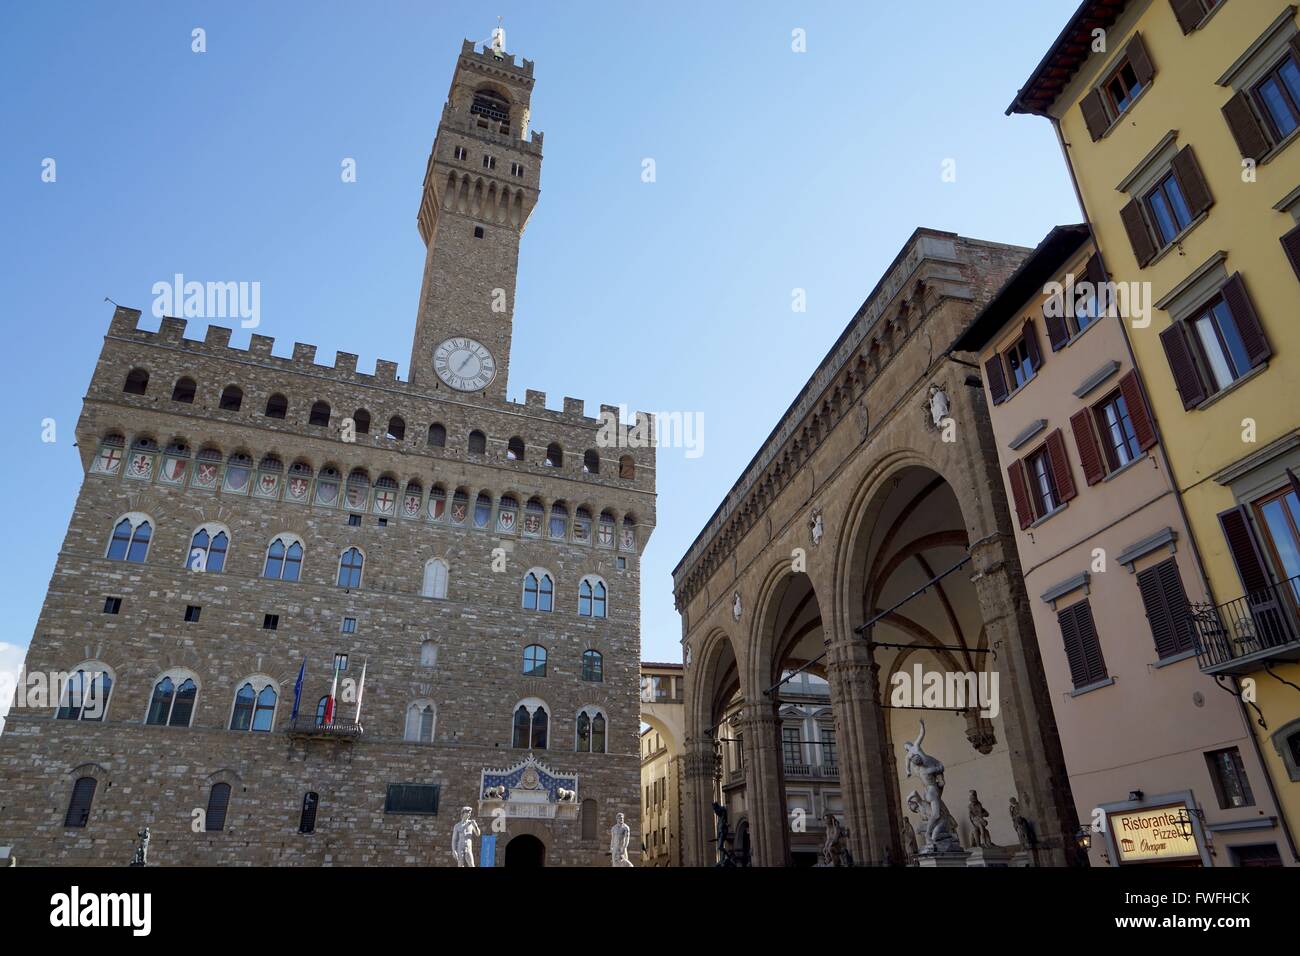 Italy: Palazzo Vecchio (town hall, left) and Loggia dei Lanzi (right) at Piazza della Signoria in Florence. Photo from 20. February 2016. Stock Photo